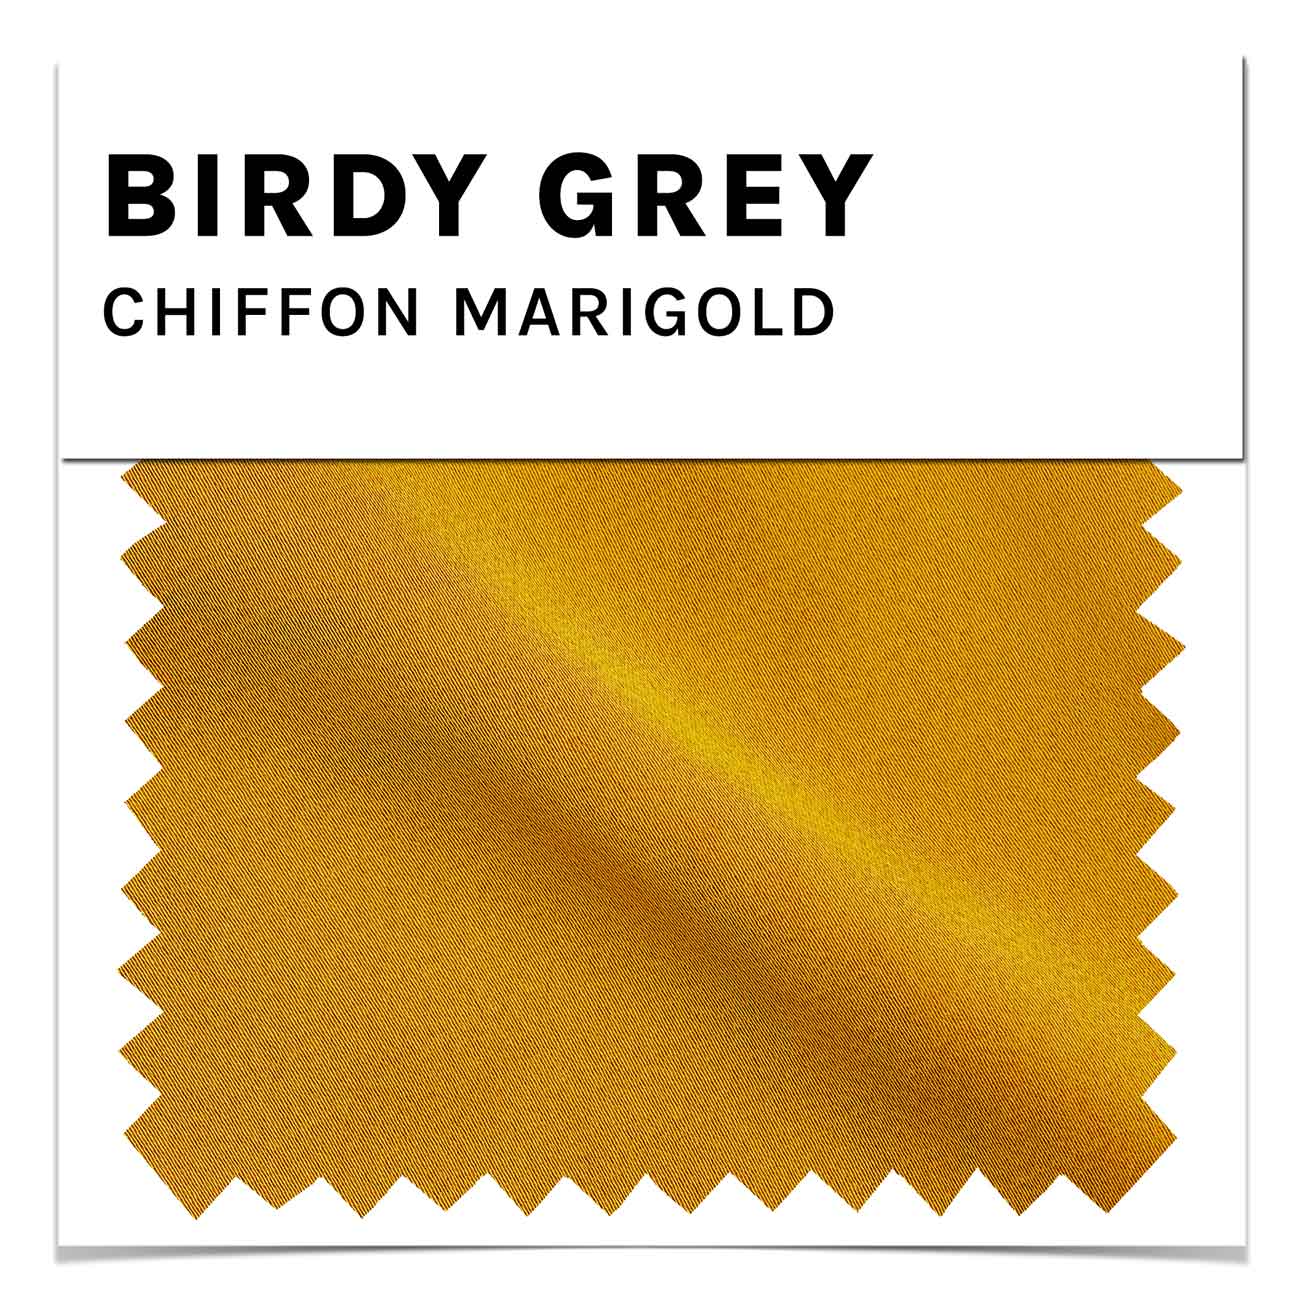 Chiffon Swatch in Marigold by Birdy Grey